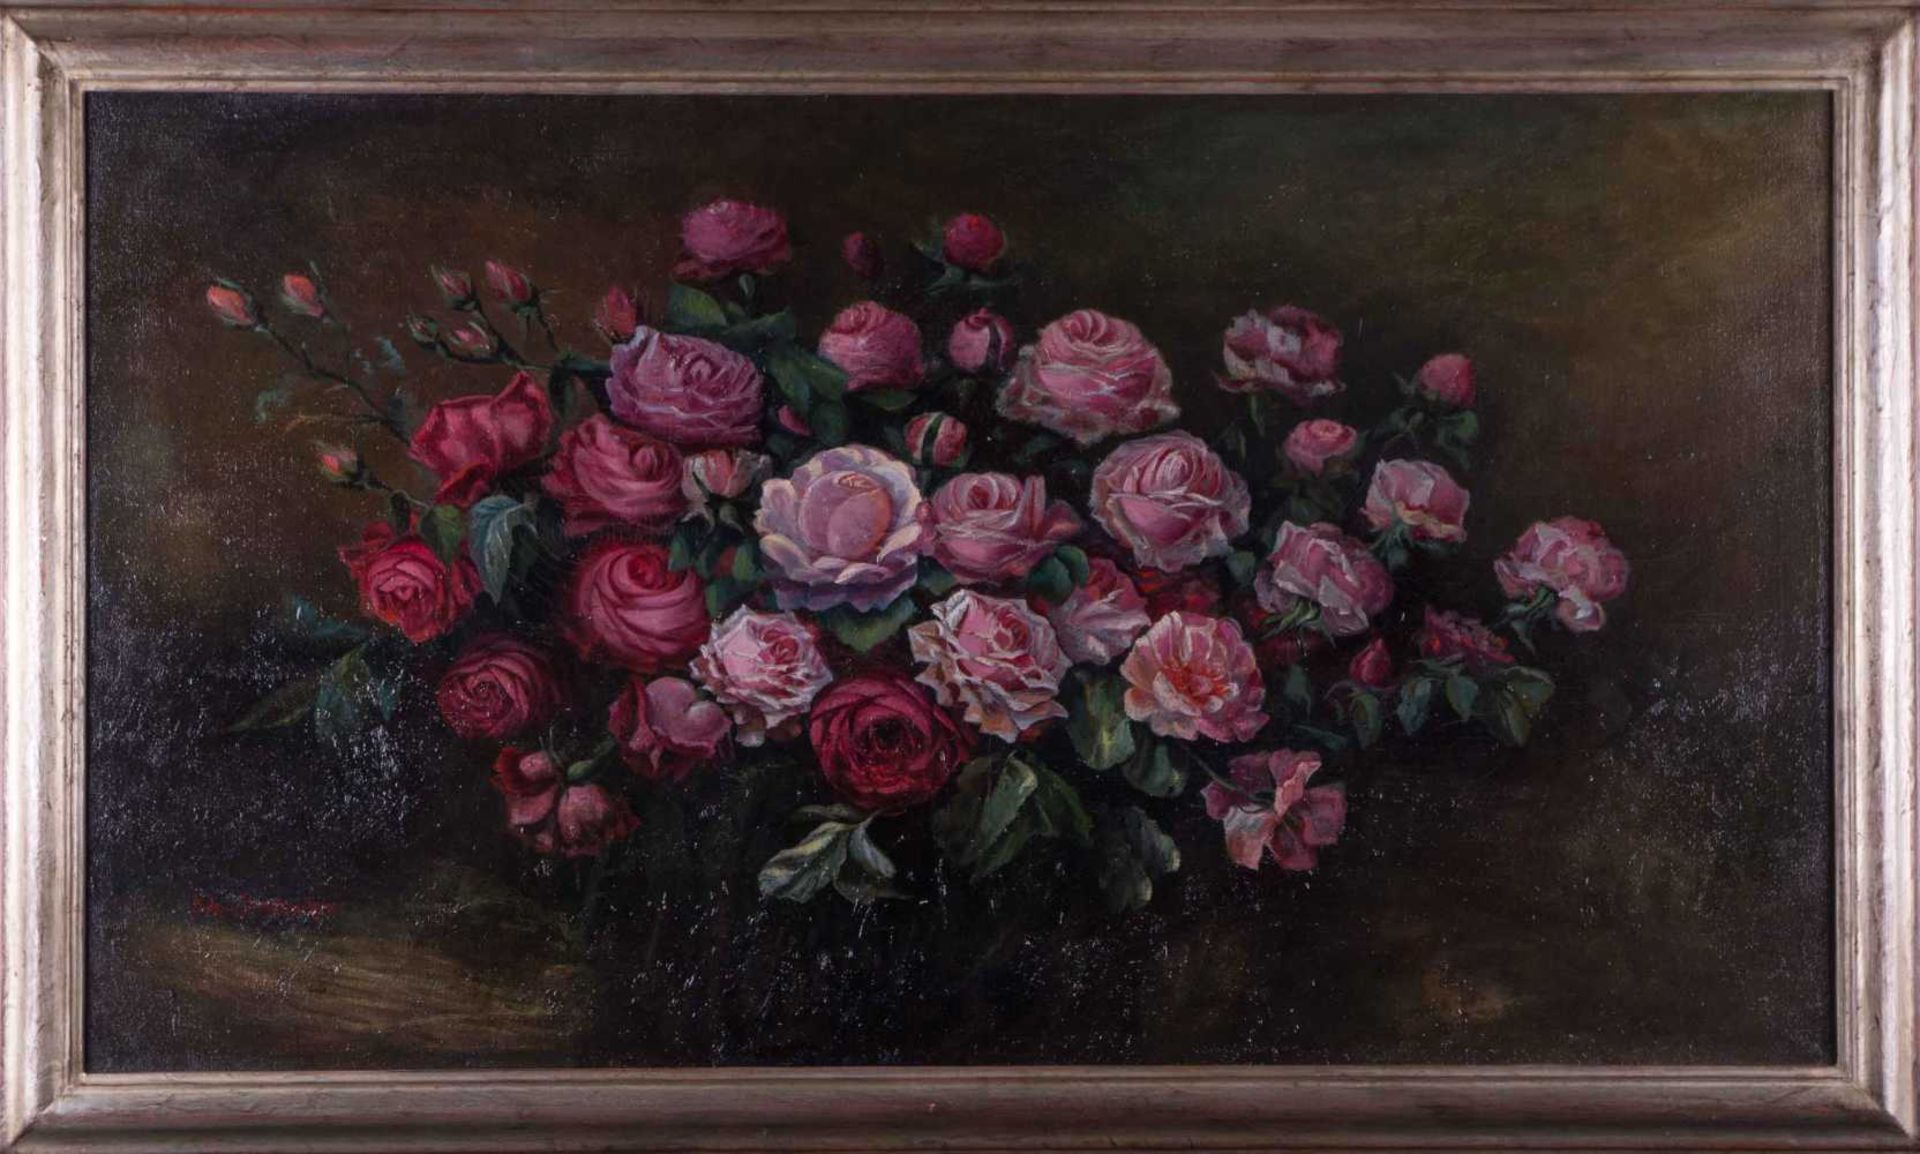 Johanna VON DESTOUCHES (1869-1956) "Rosen Stillleben" Gemälde Öl/Leinwand, 68,5 cm x 121,5 cm, links - Bild 2 aus 7